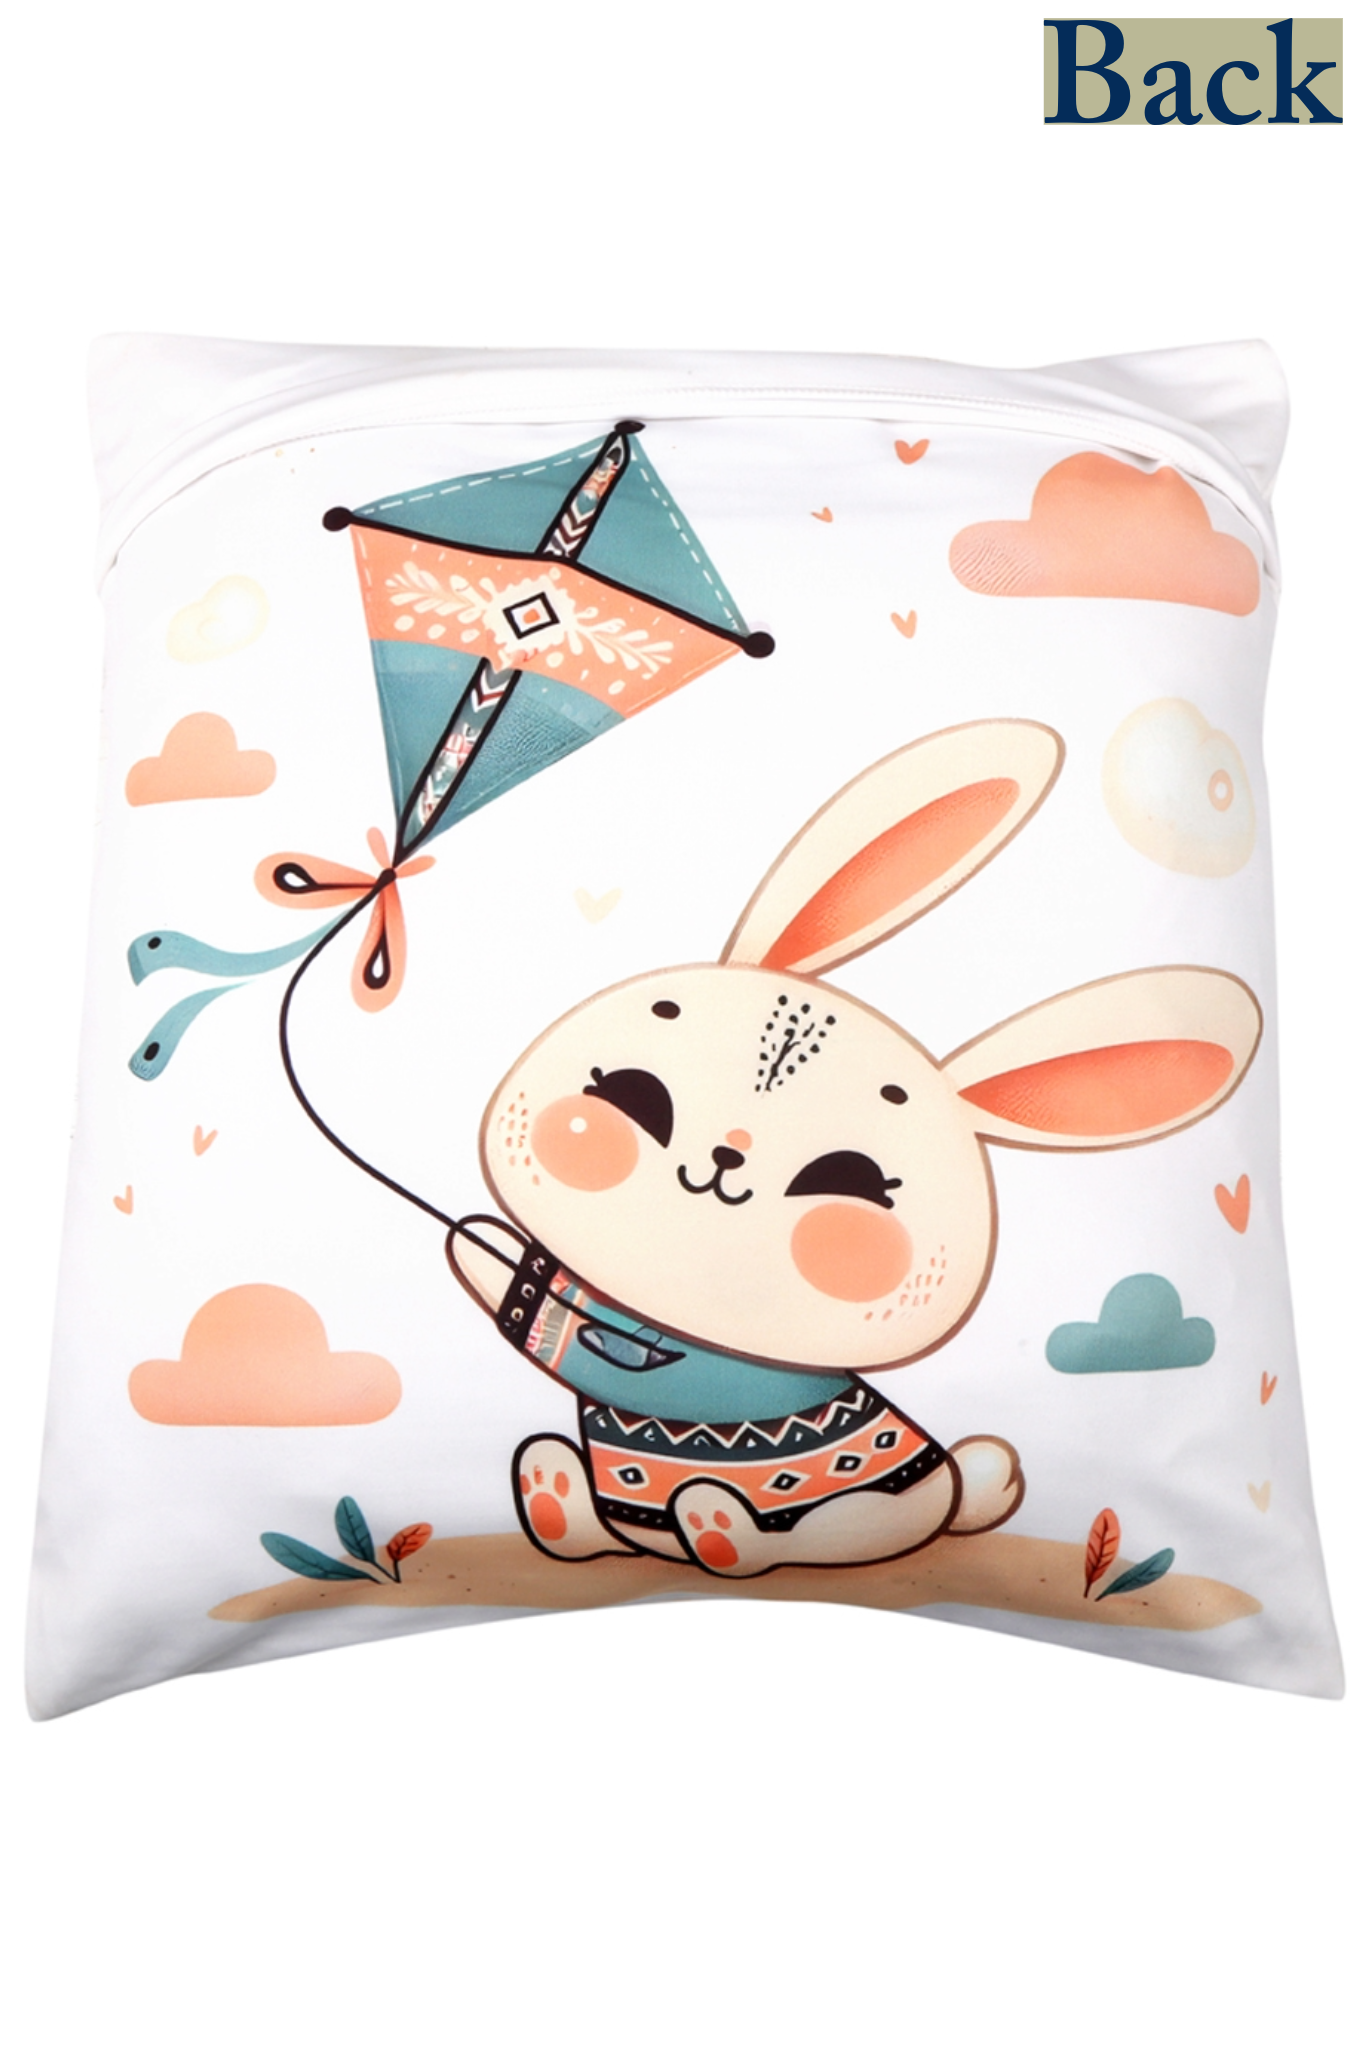 Bunny Kids Cushion Cover - Printed - Ayuda Homes